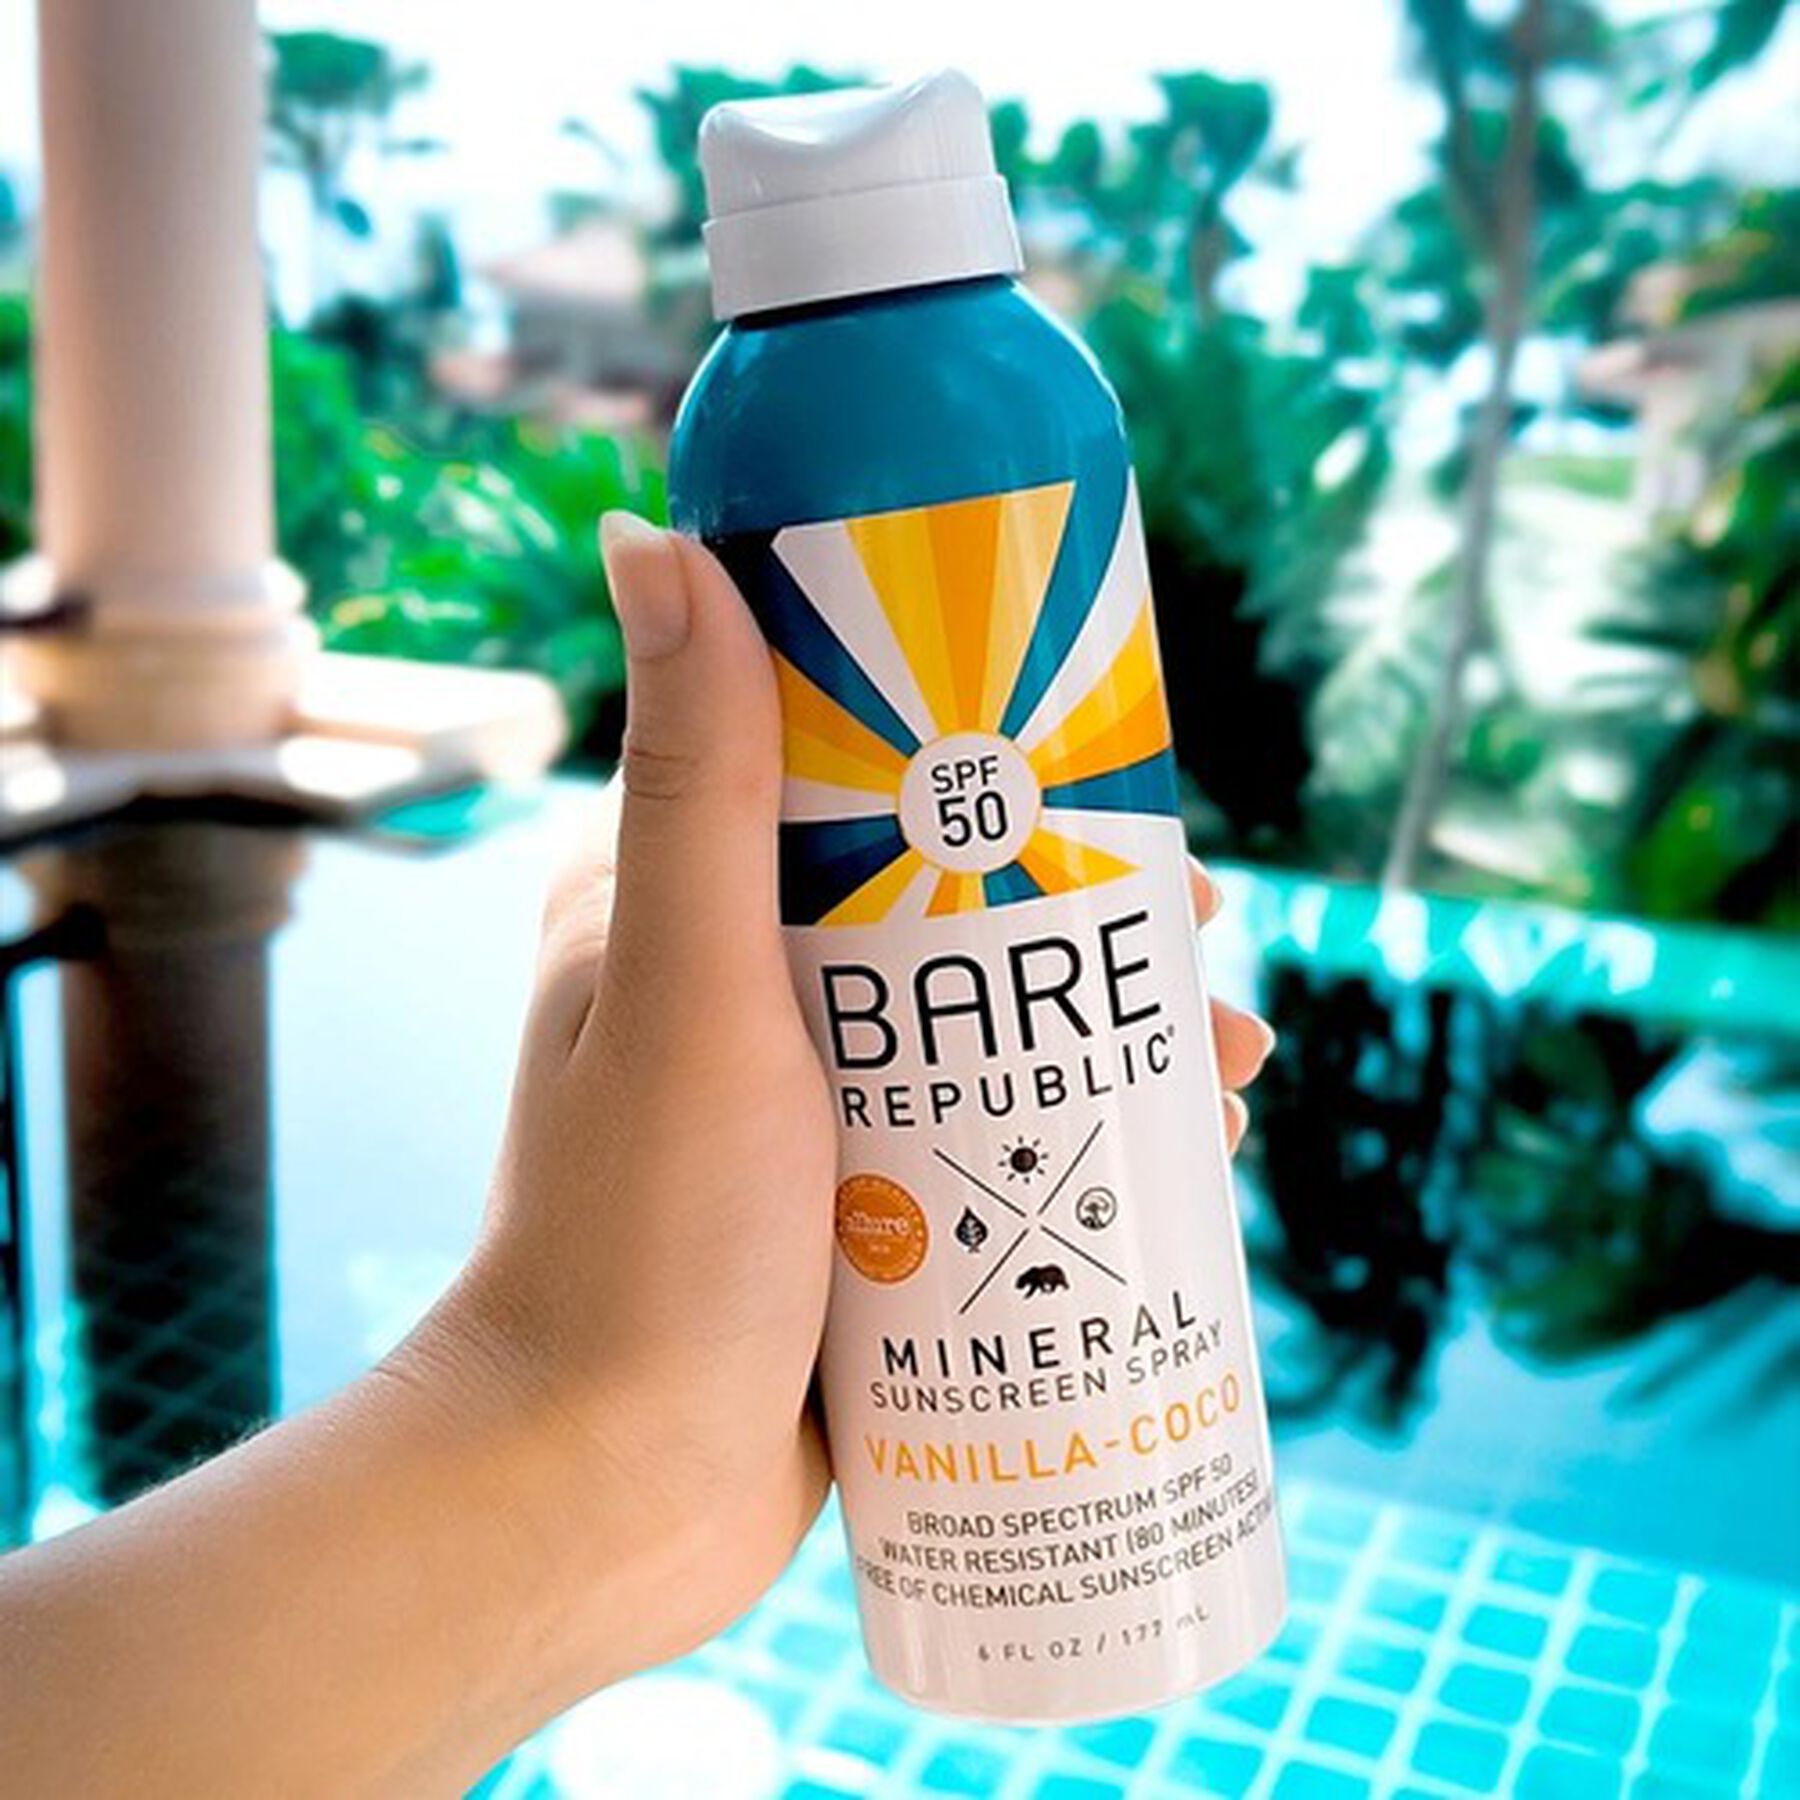 Bare Republic Mineral SPF 50 Sunscreen Spray, Vanilla-Coco, 6 fl oz
